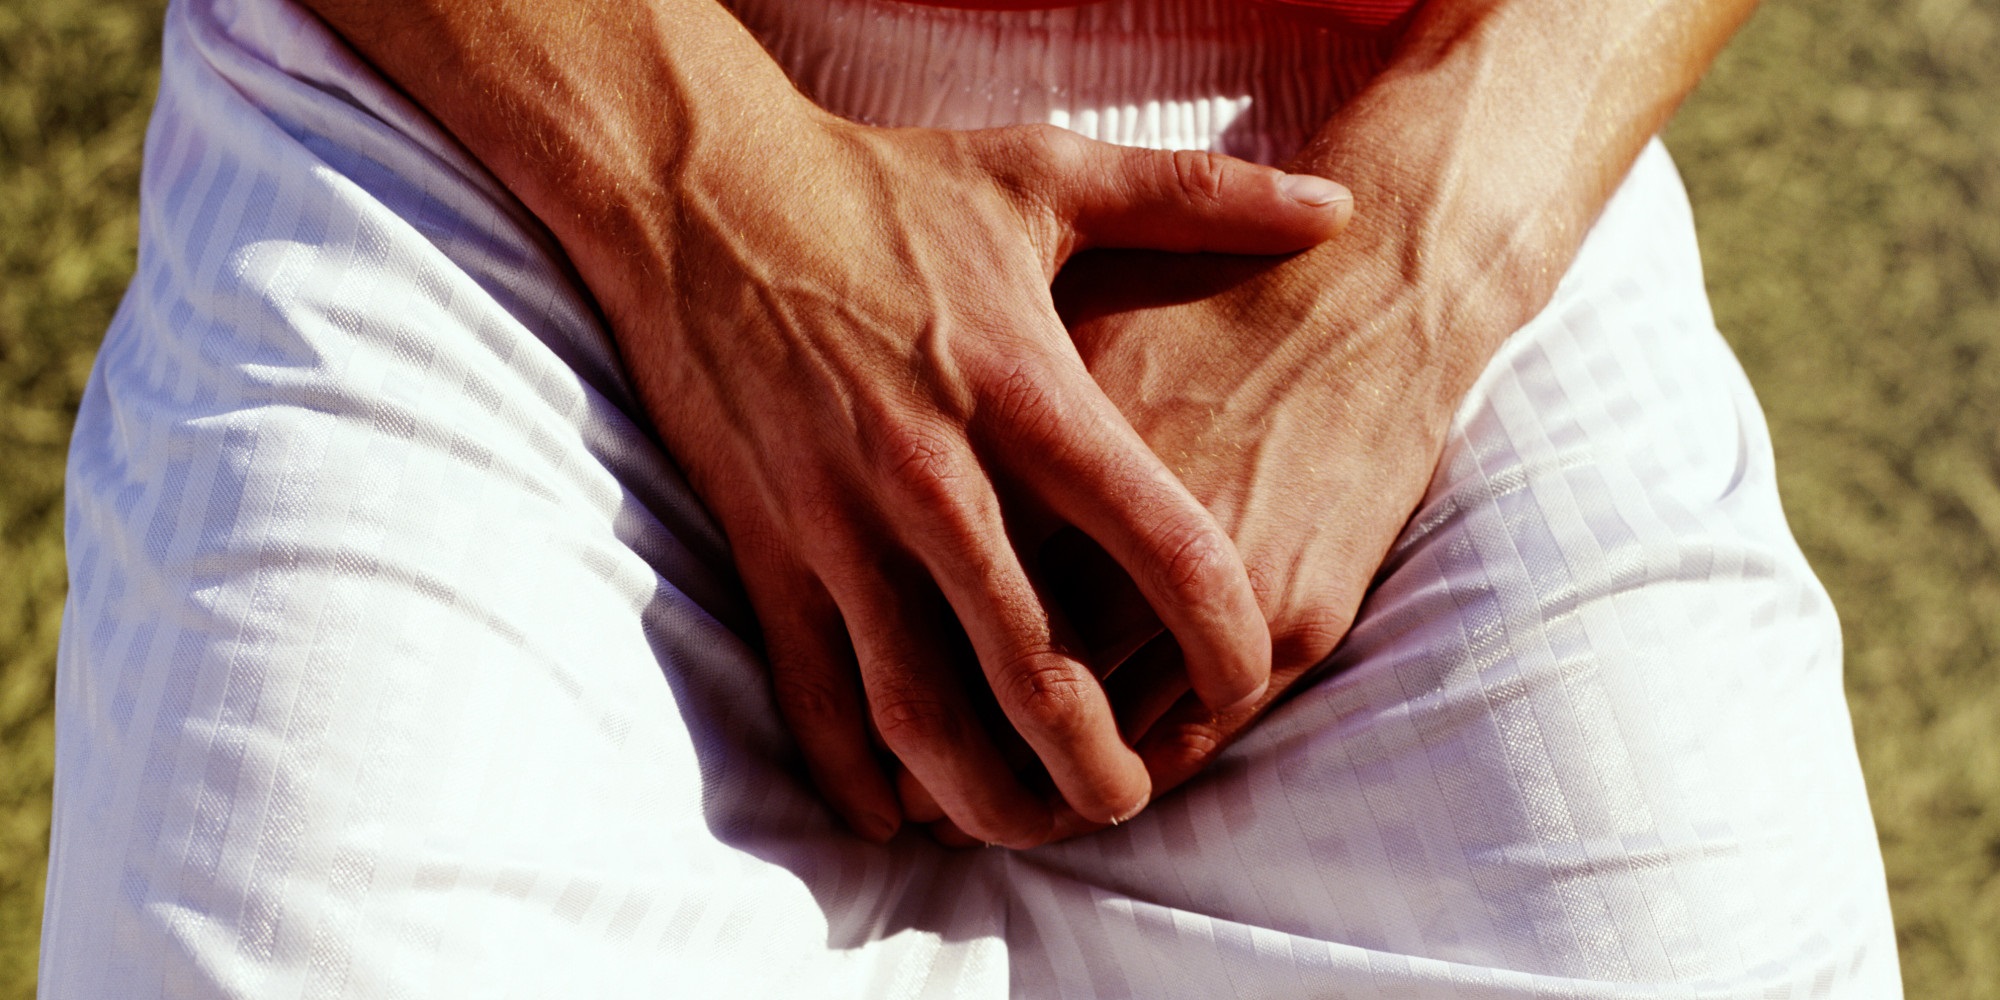 Мужчина при микоплазмозе испытывает дискомфорт и боль во время мочеиспускания, чувствует жжение в уретре